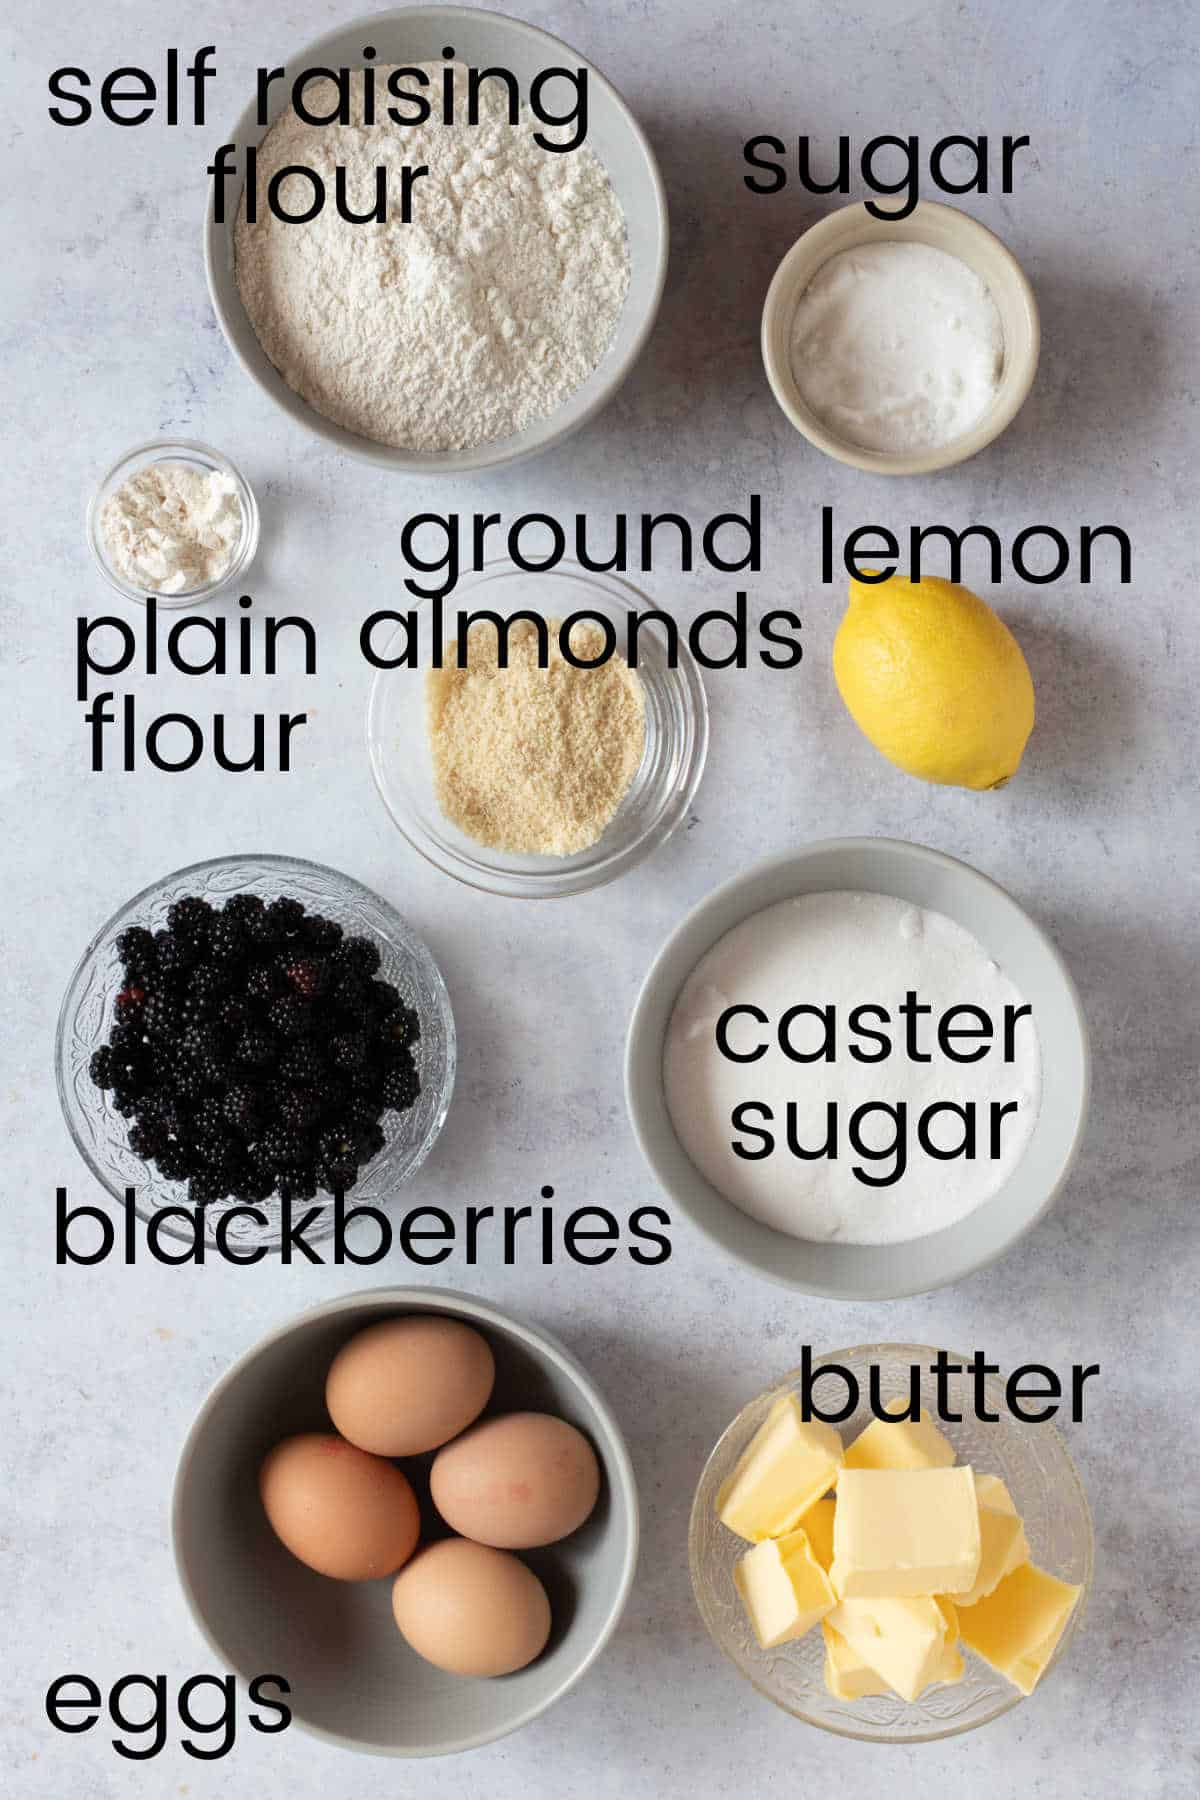 Ingredients for blackberry loaf cake.